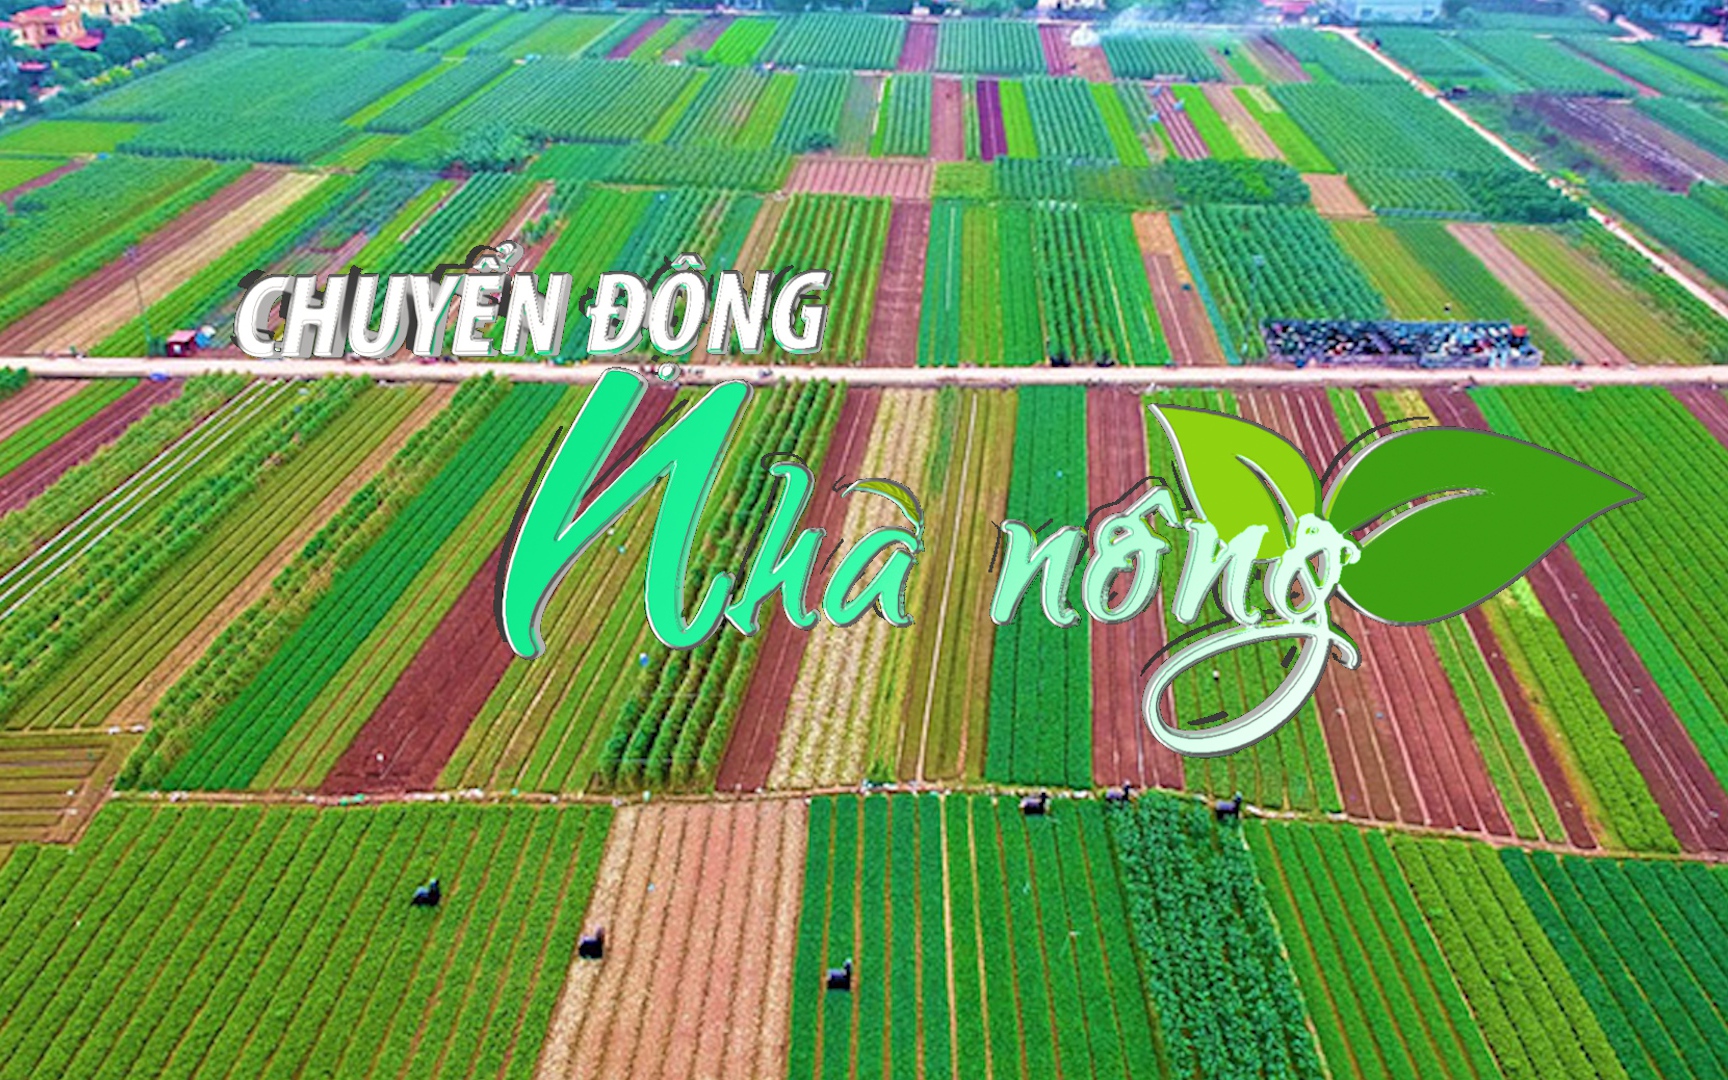 Chuyển động Nhà nông 9/7: Hà Nội phấn đấu dẫn đầu cả nước trong phát triển nông nghiệp công nghệ cao